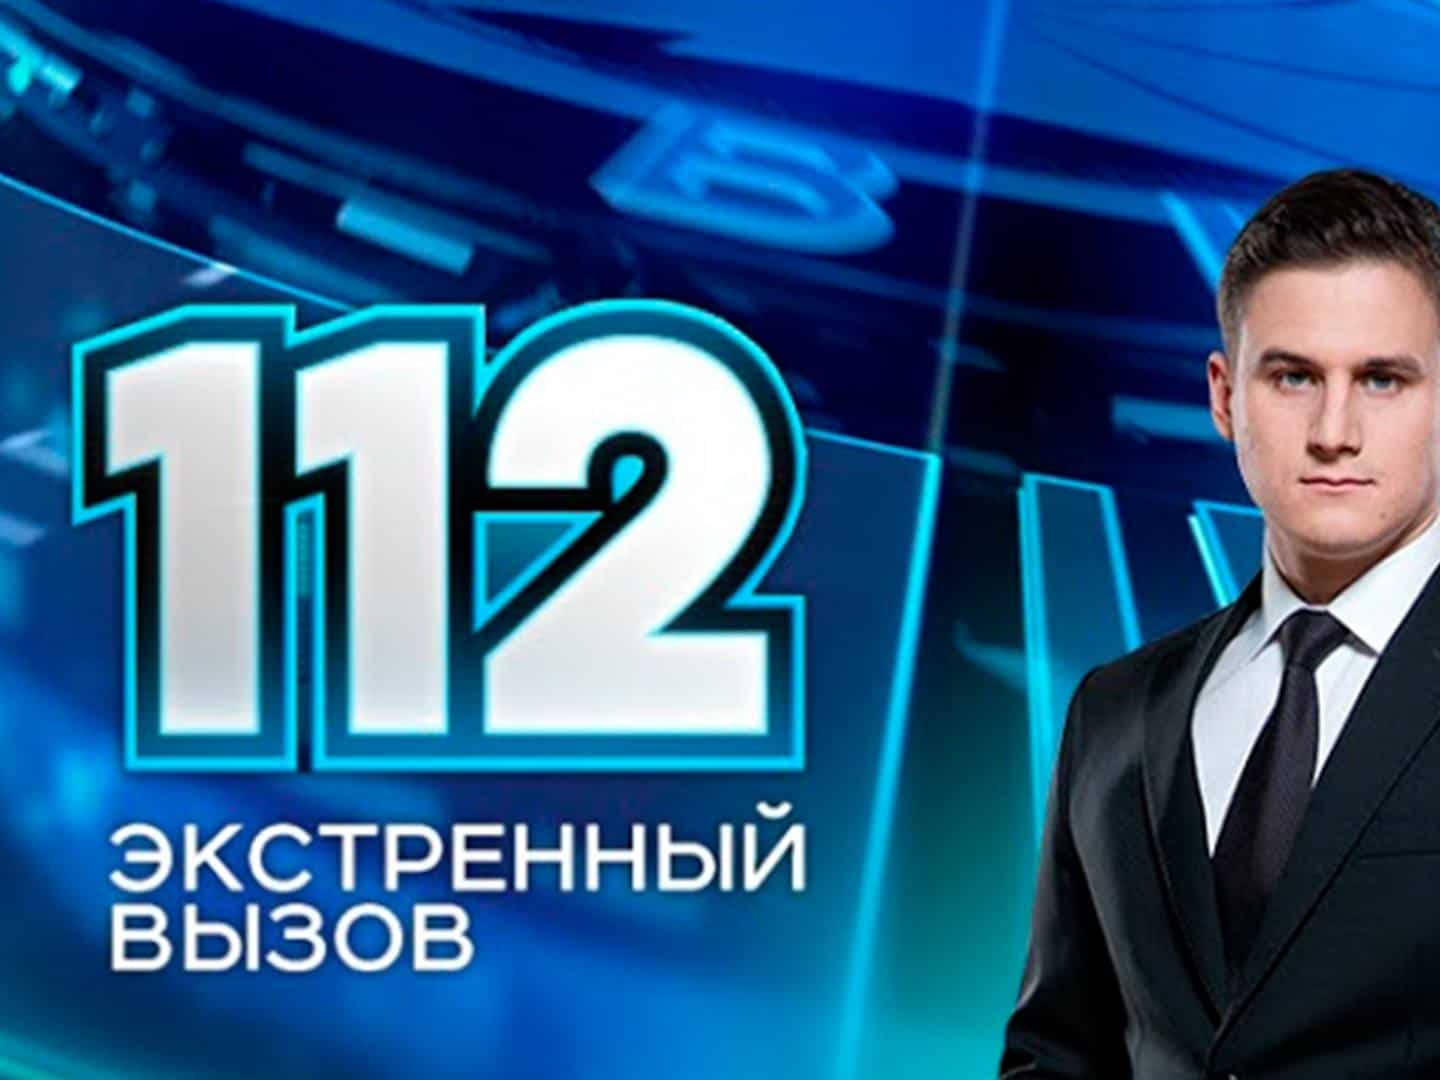 Программа сегодня новосибирск рен. Экстренный вызов 112. 112 РЕН ТВ. Канал РЕН ТВ Экстренный вызов 112. Информационная программа 112 РЕН ТВ.